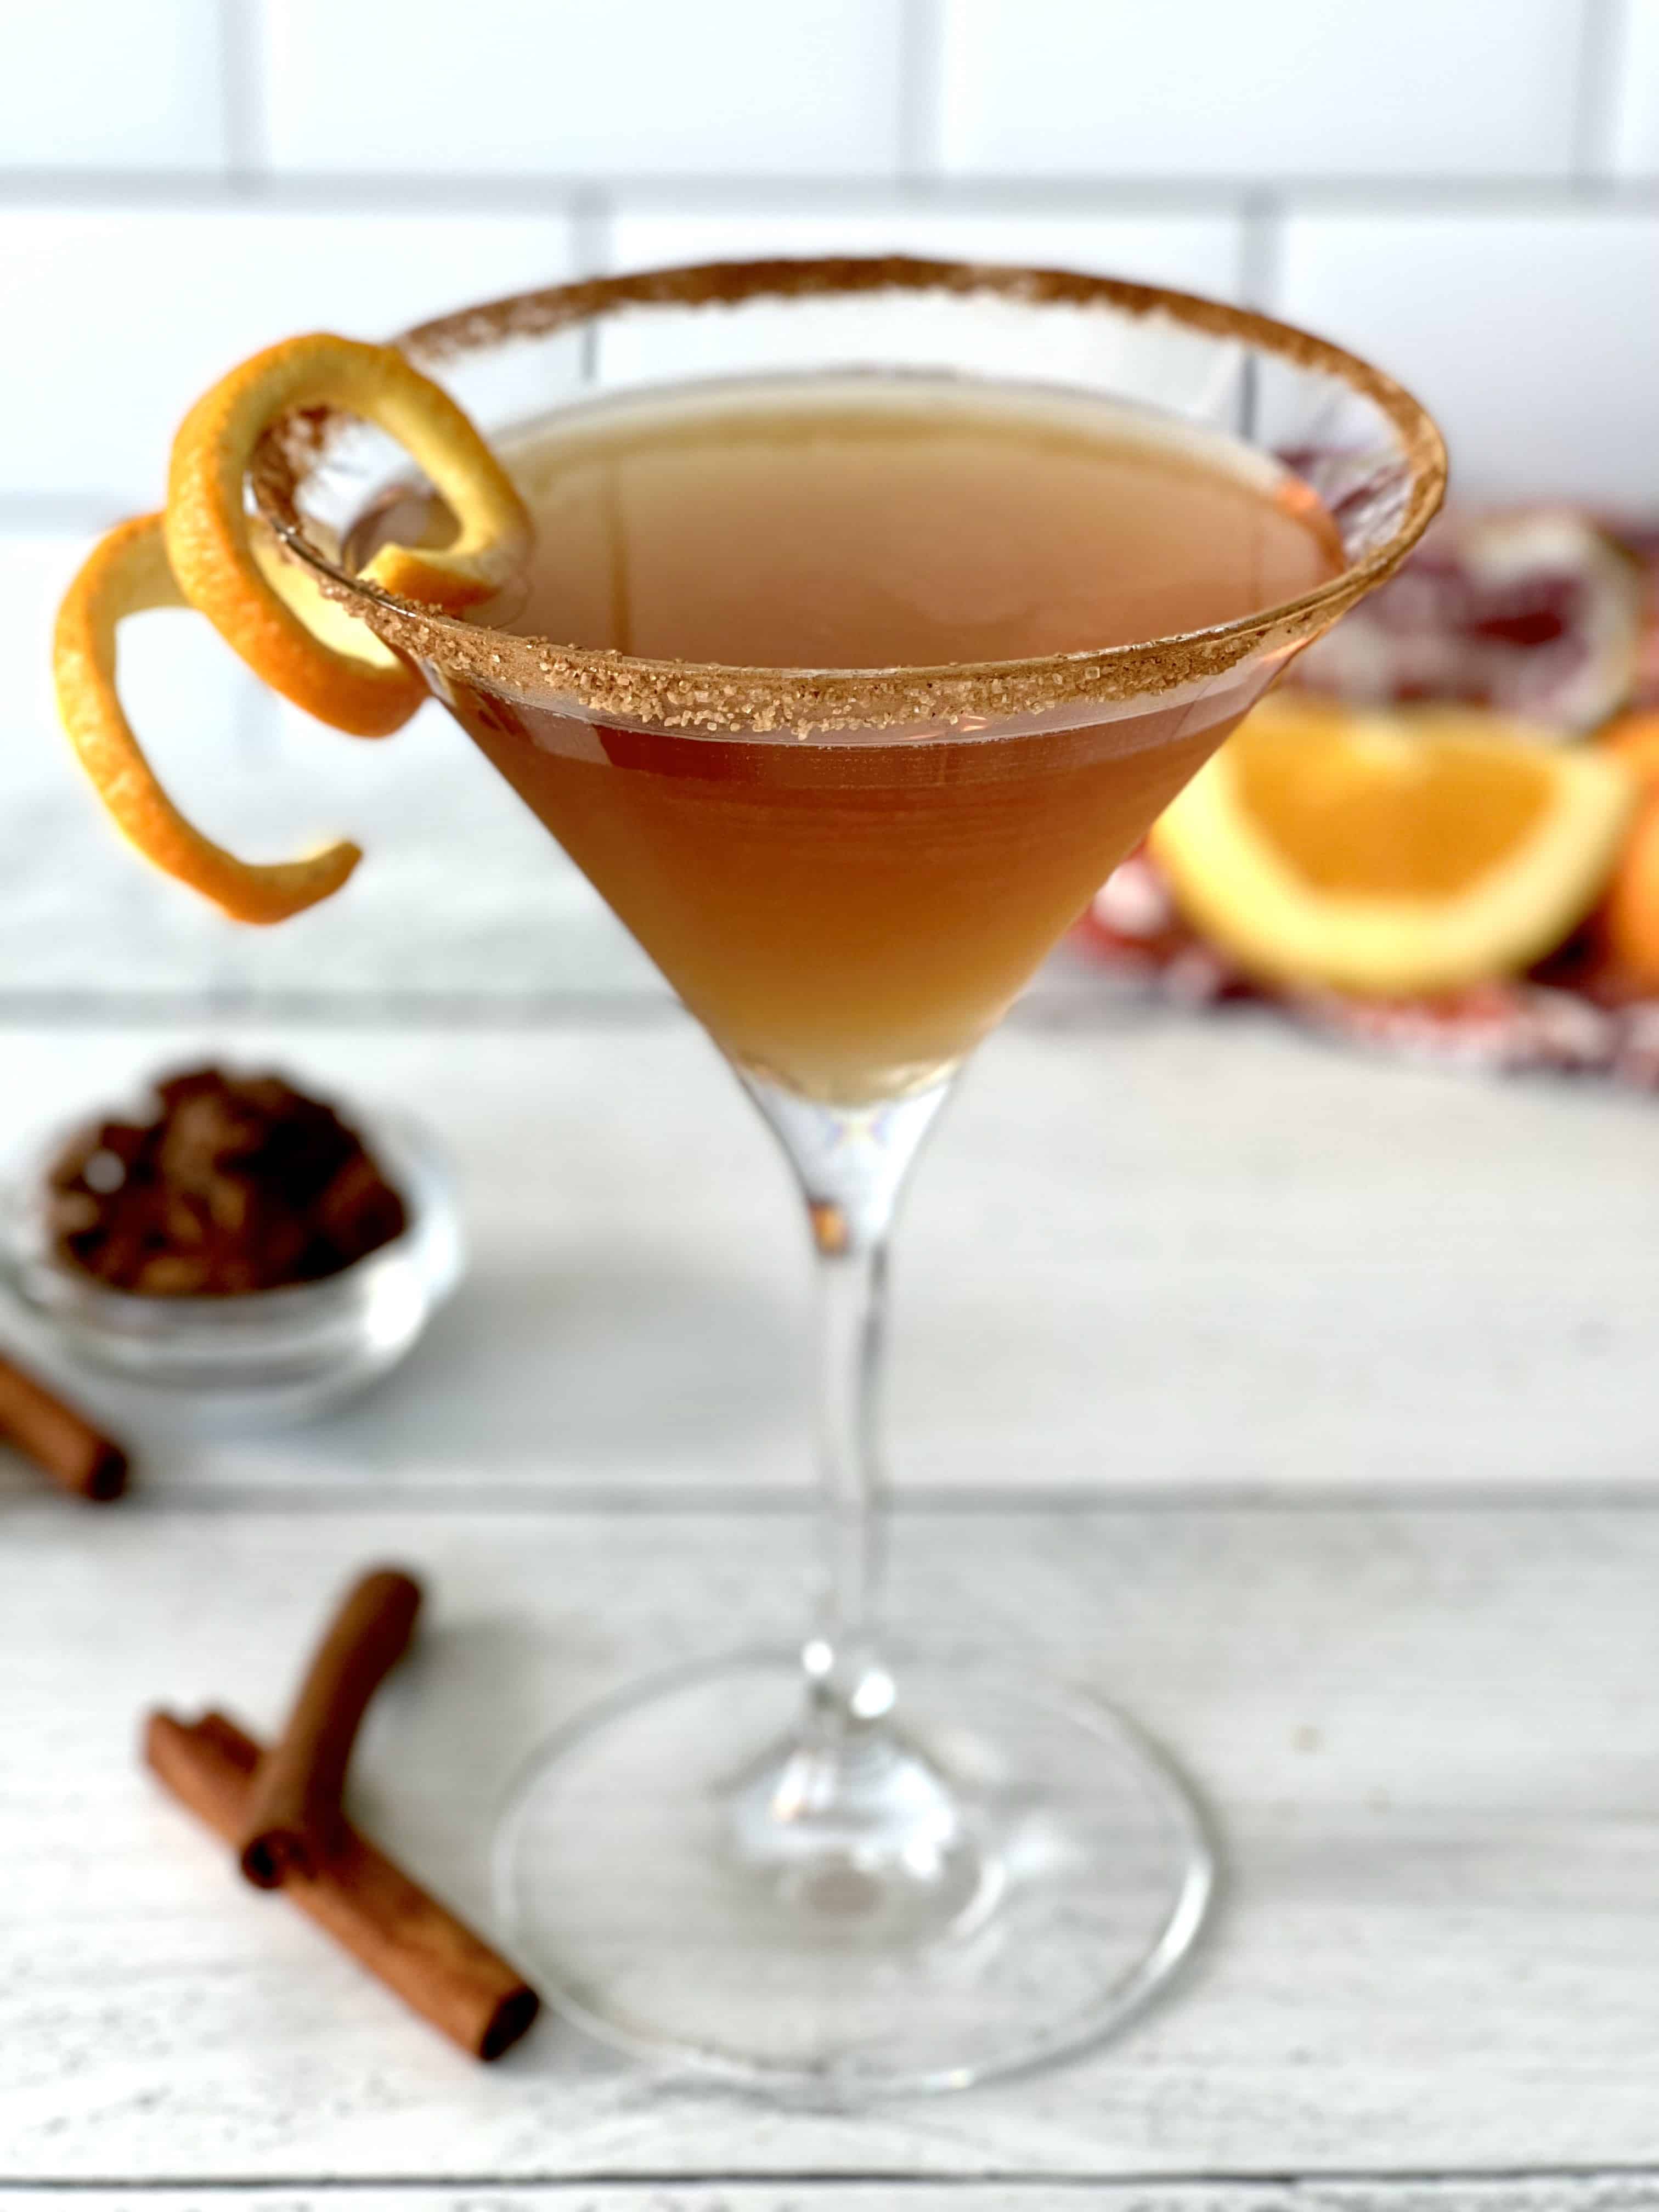 A chai vodka martini in a martini glass with a cinnamon sugar rim and an orange peel twist on the rim